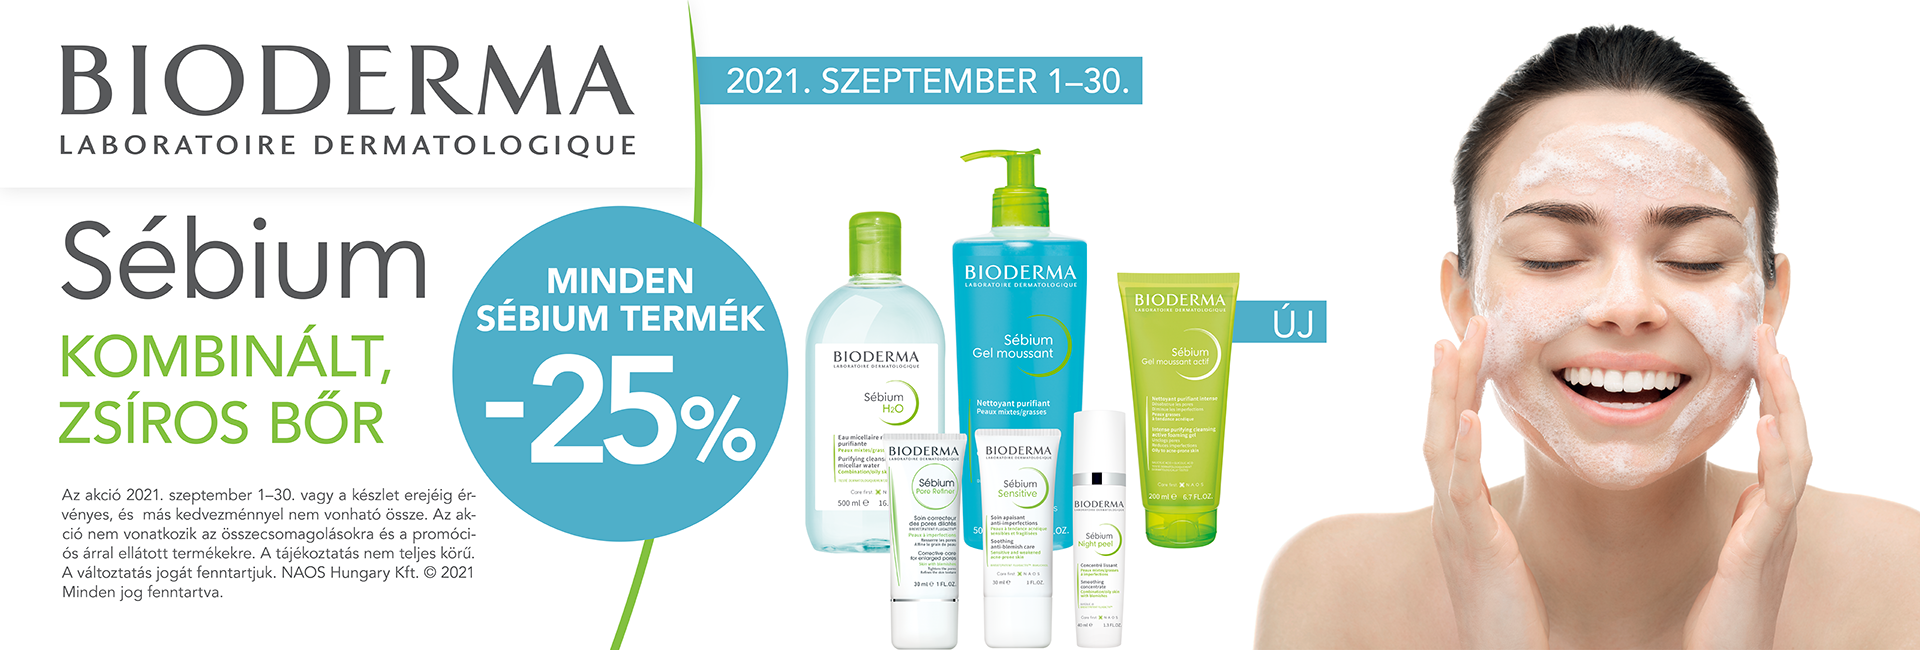 2021. szeptember 30-ig minden Bioderma Sébium terméket 30% kedvezménnyel kínálunk!